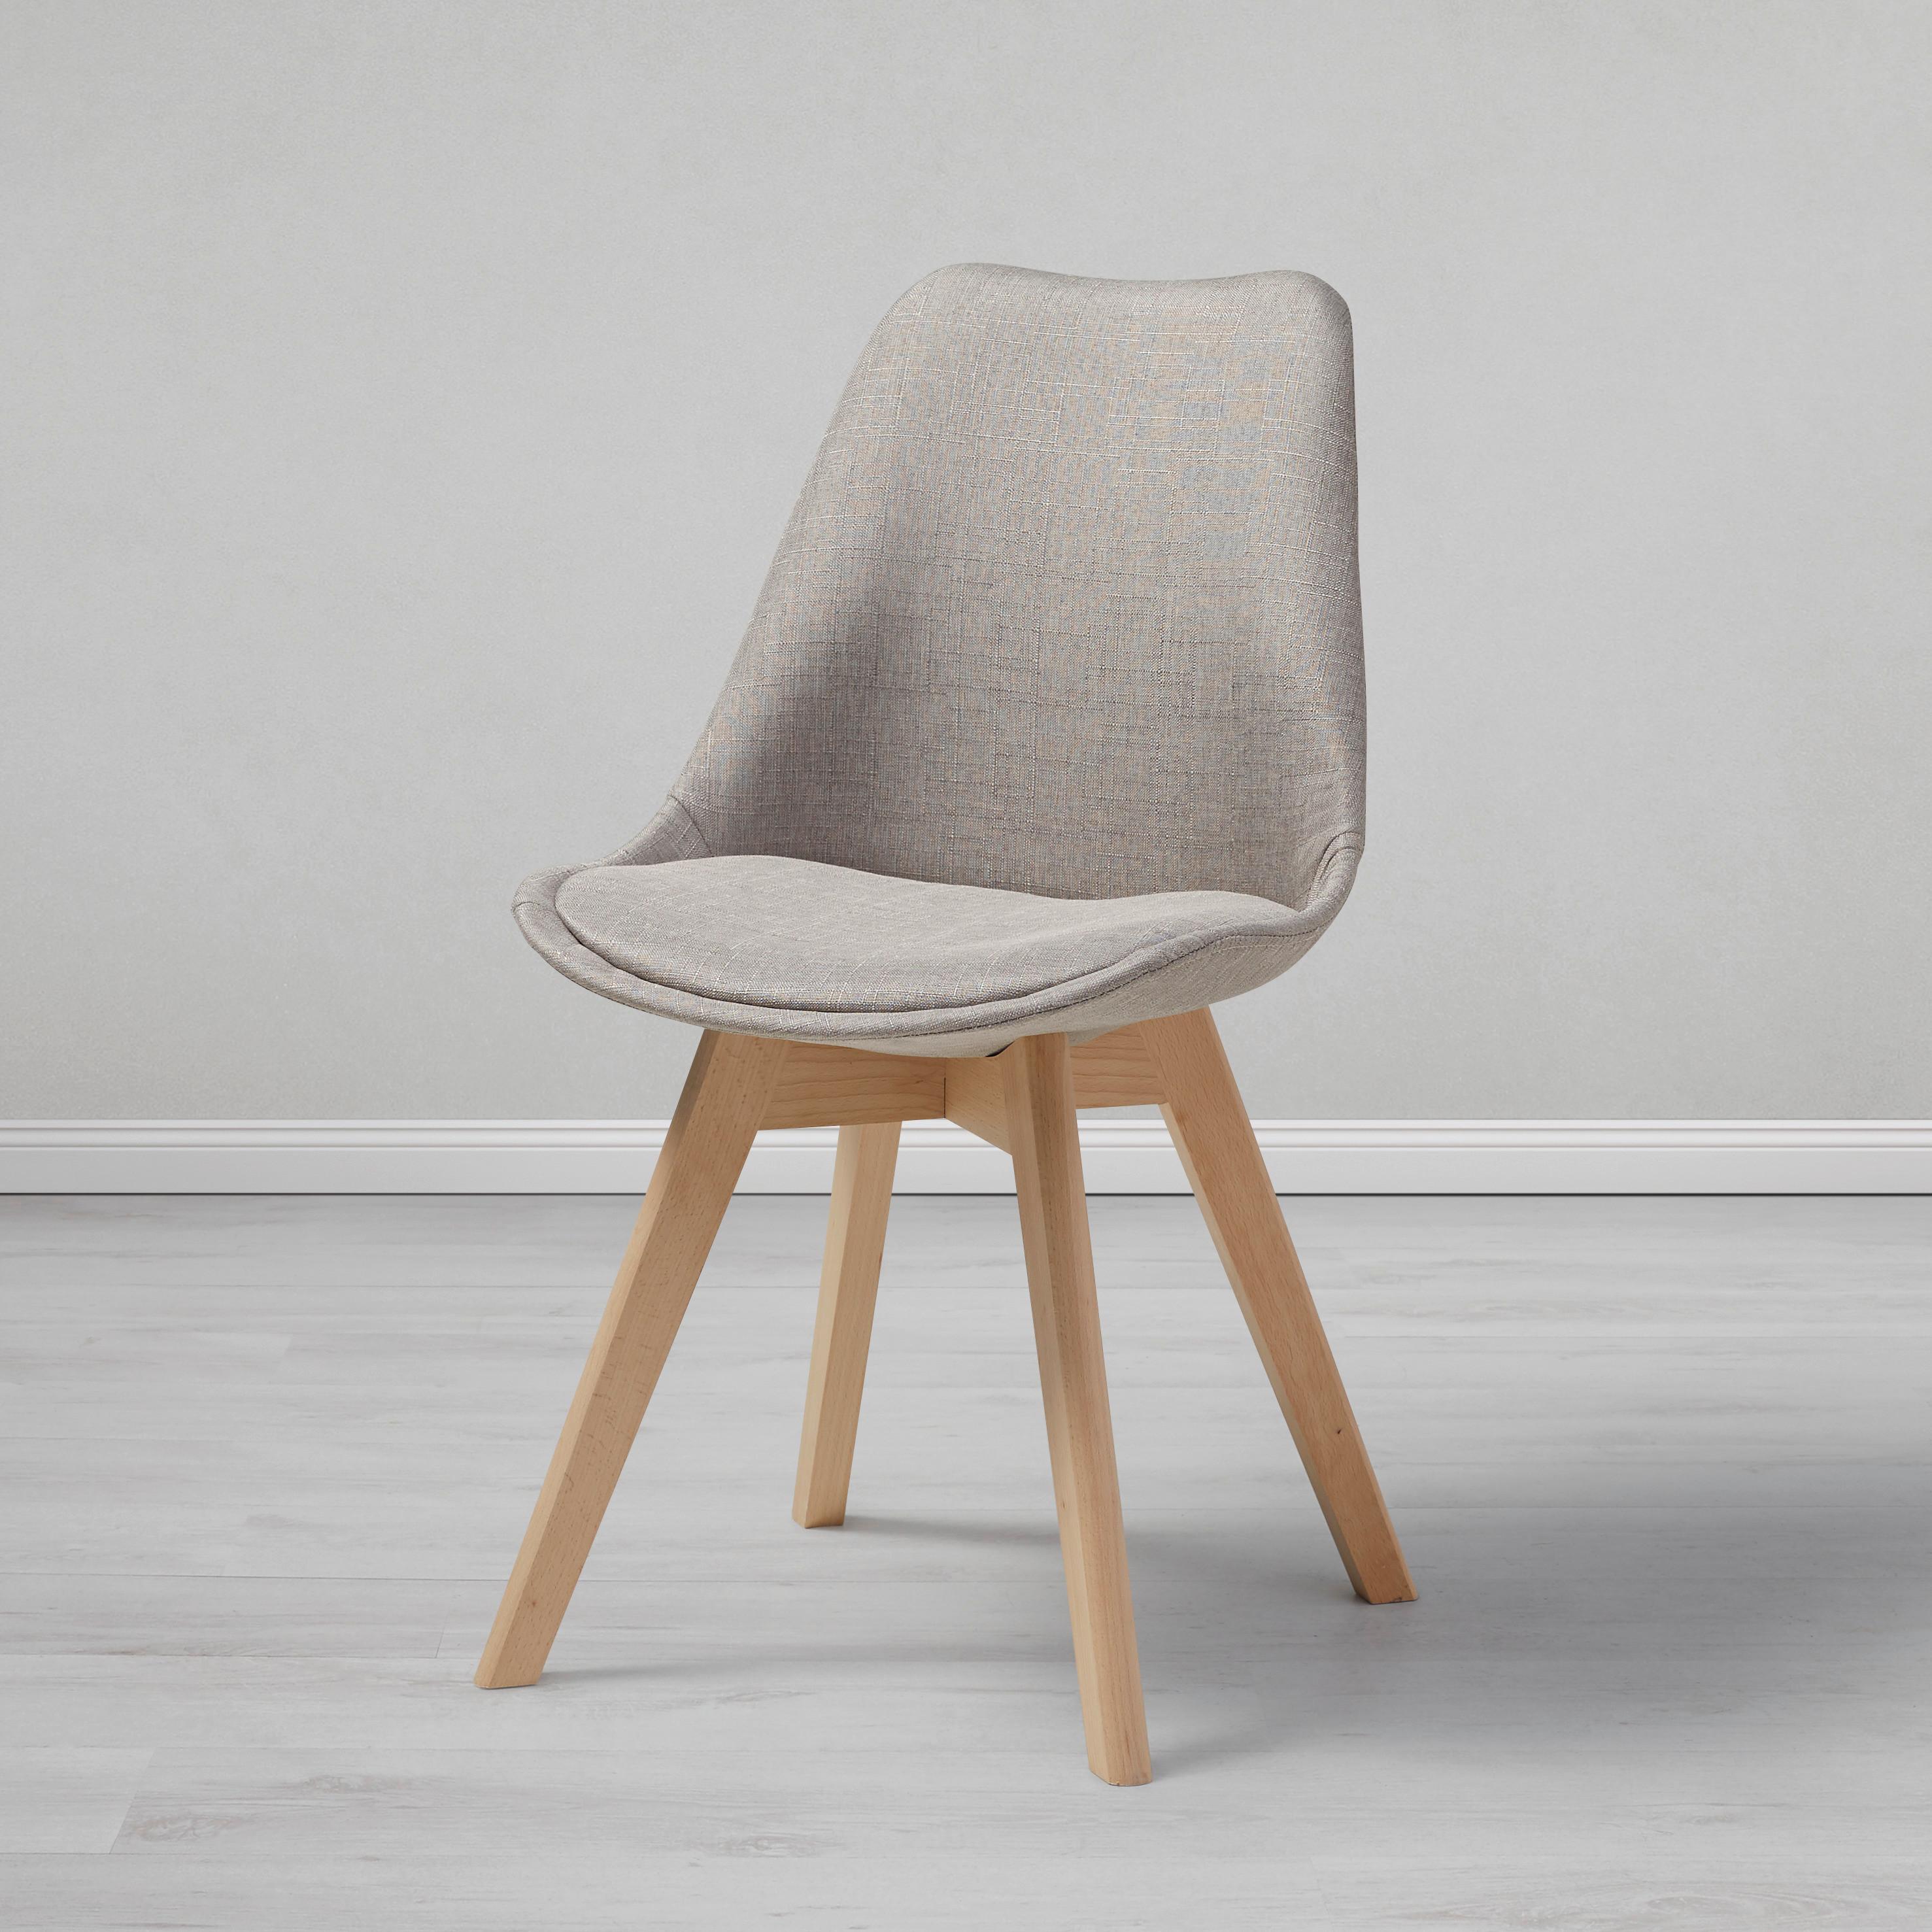 Jídelní Židle Rocksi - světle šedá/barvy buku, Moderní, dřevo/textil (48/82,5/43cm) - Modern Living